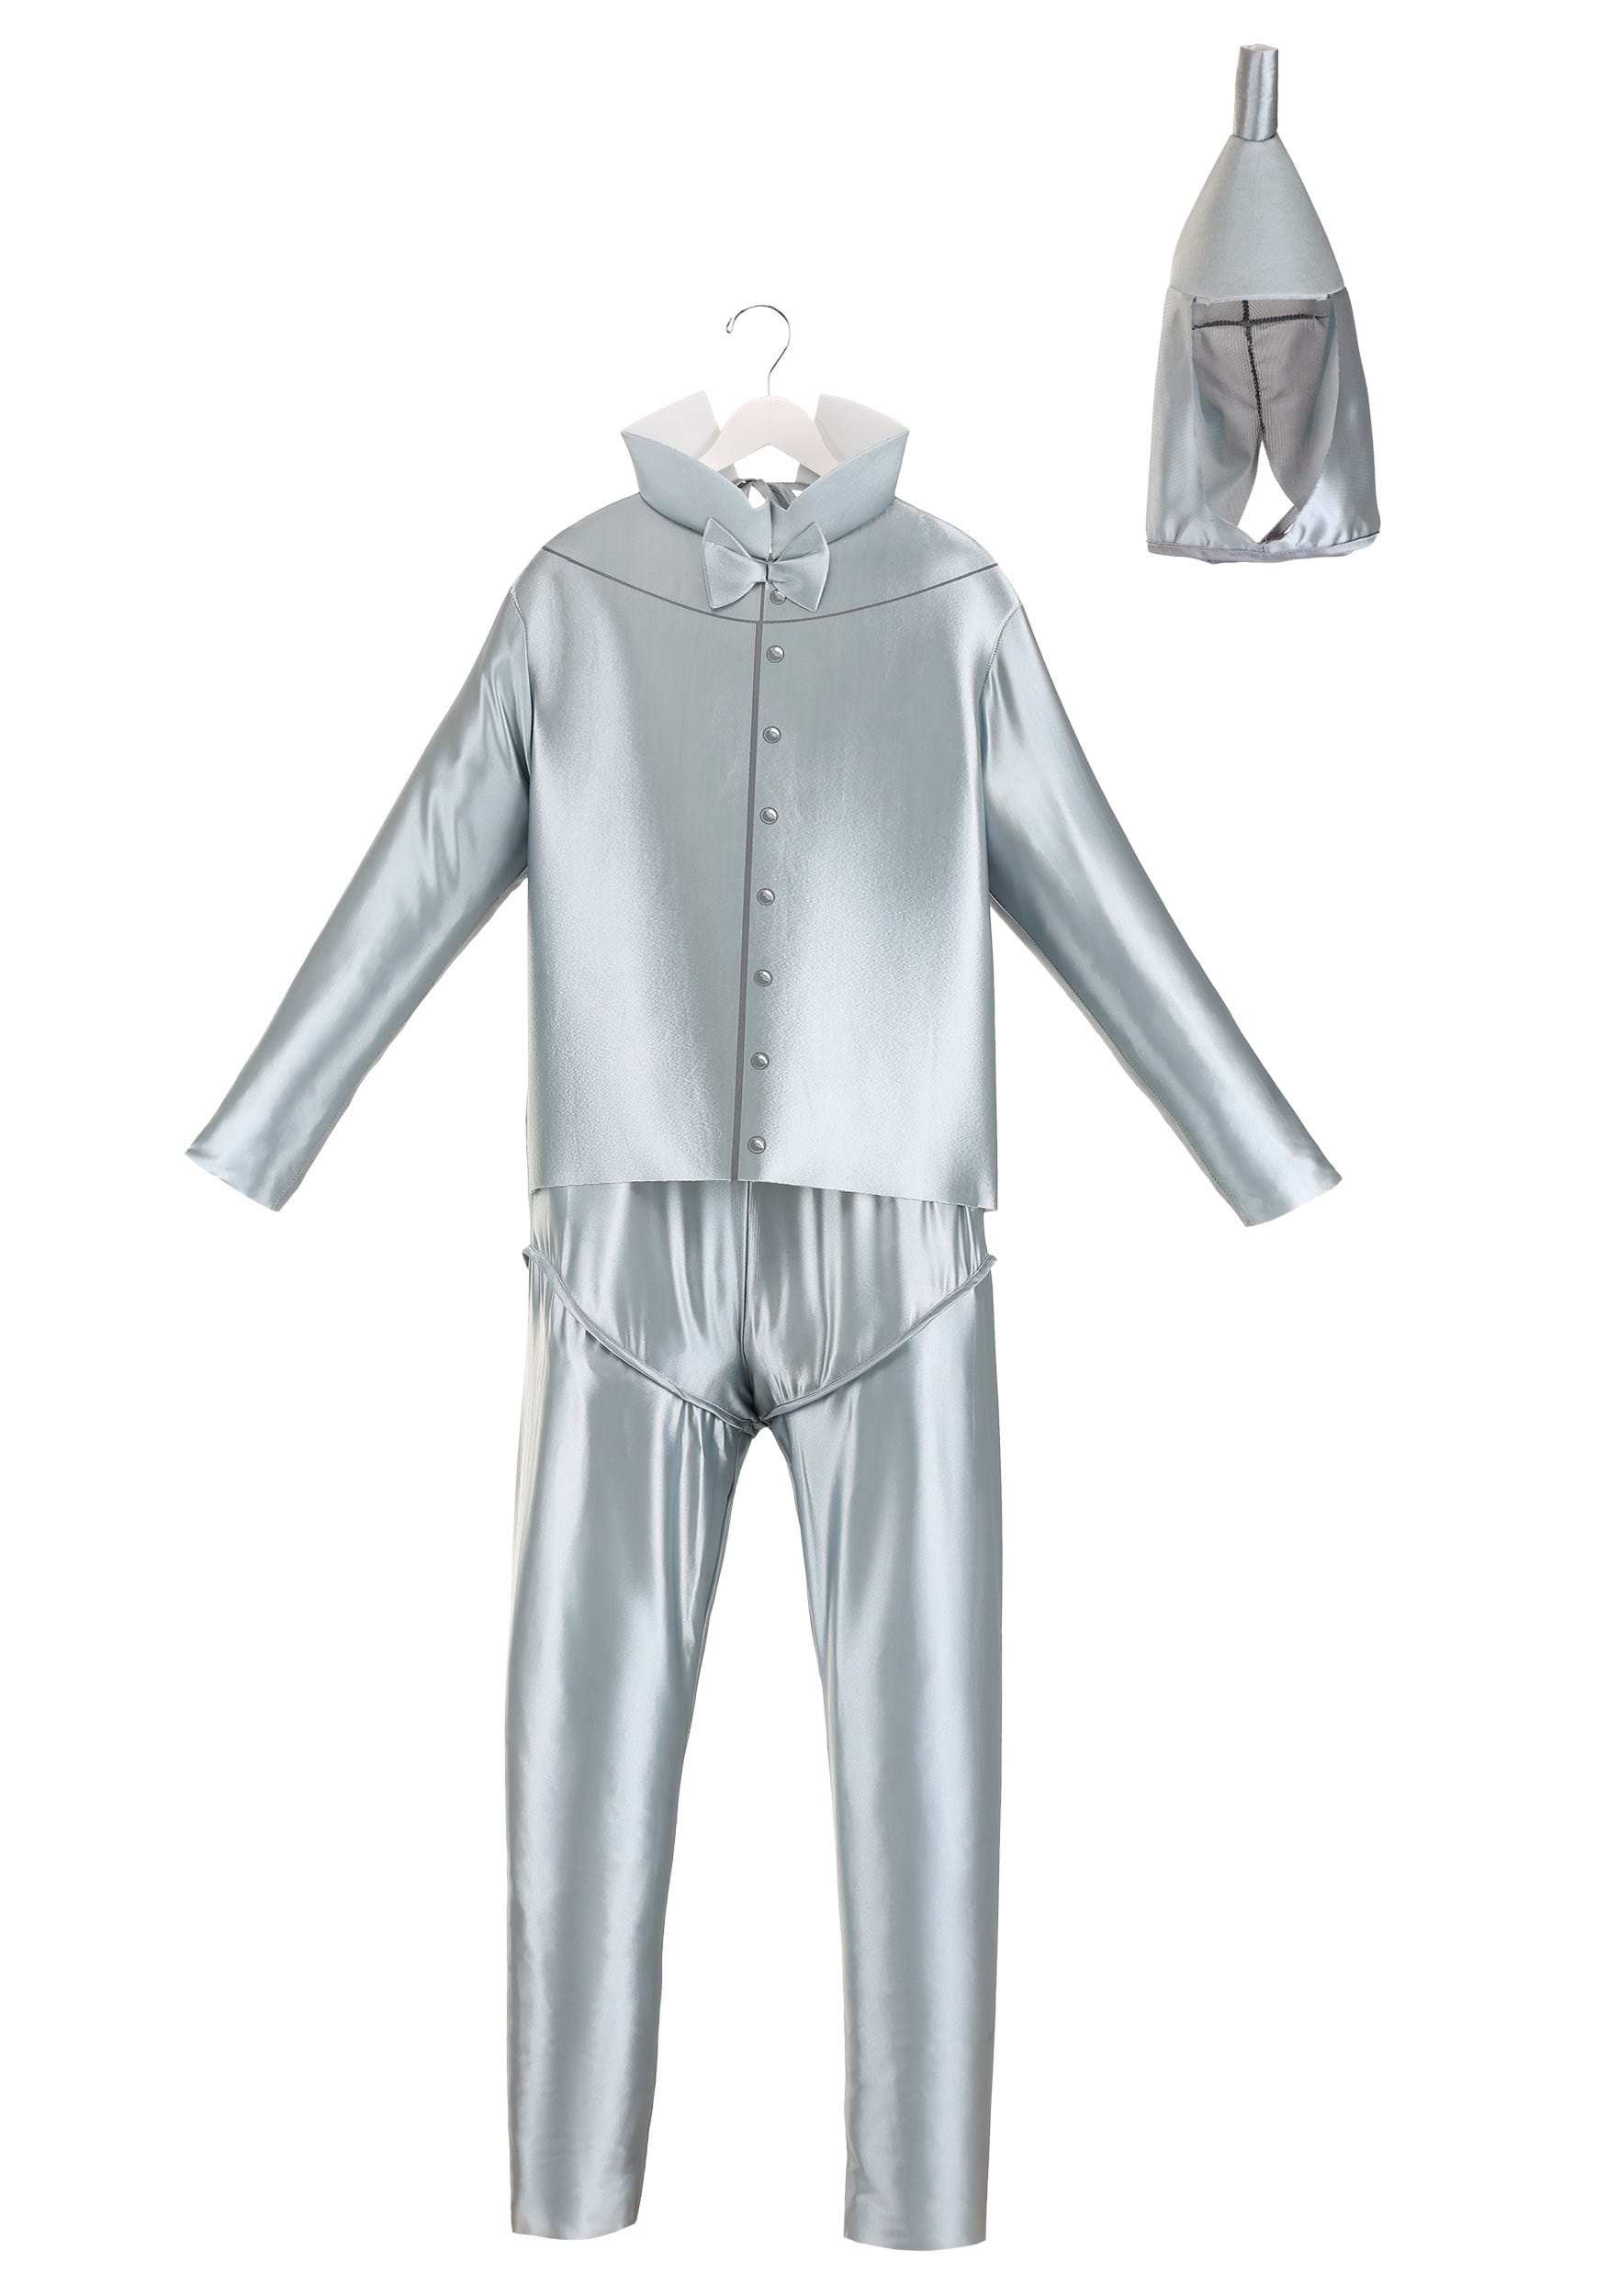 Plus Size Tin Man Fancy Dress Costume 1X , Wizard Of OZ Fancy Dress Costume